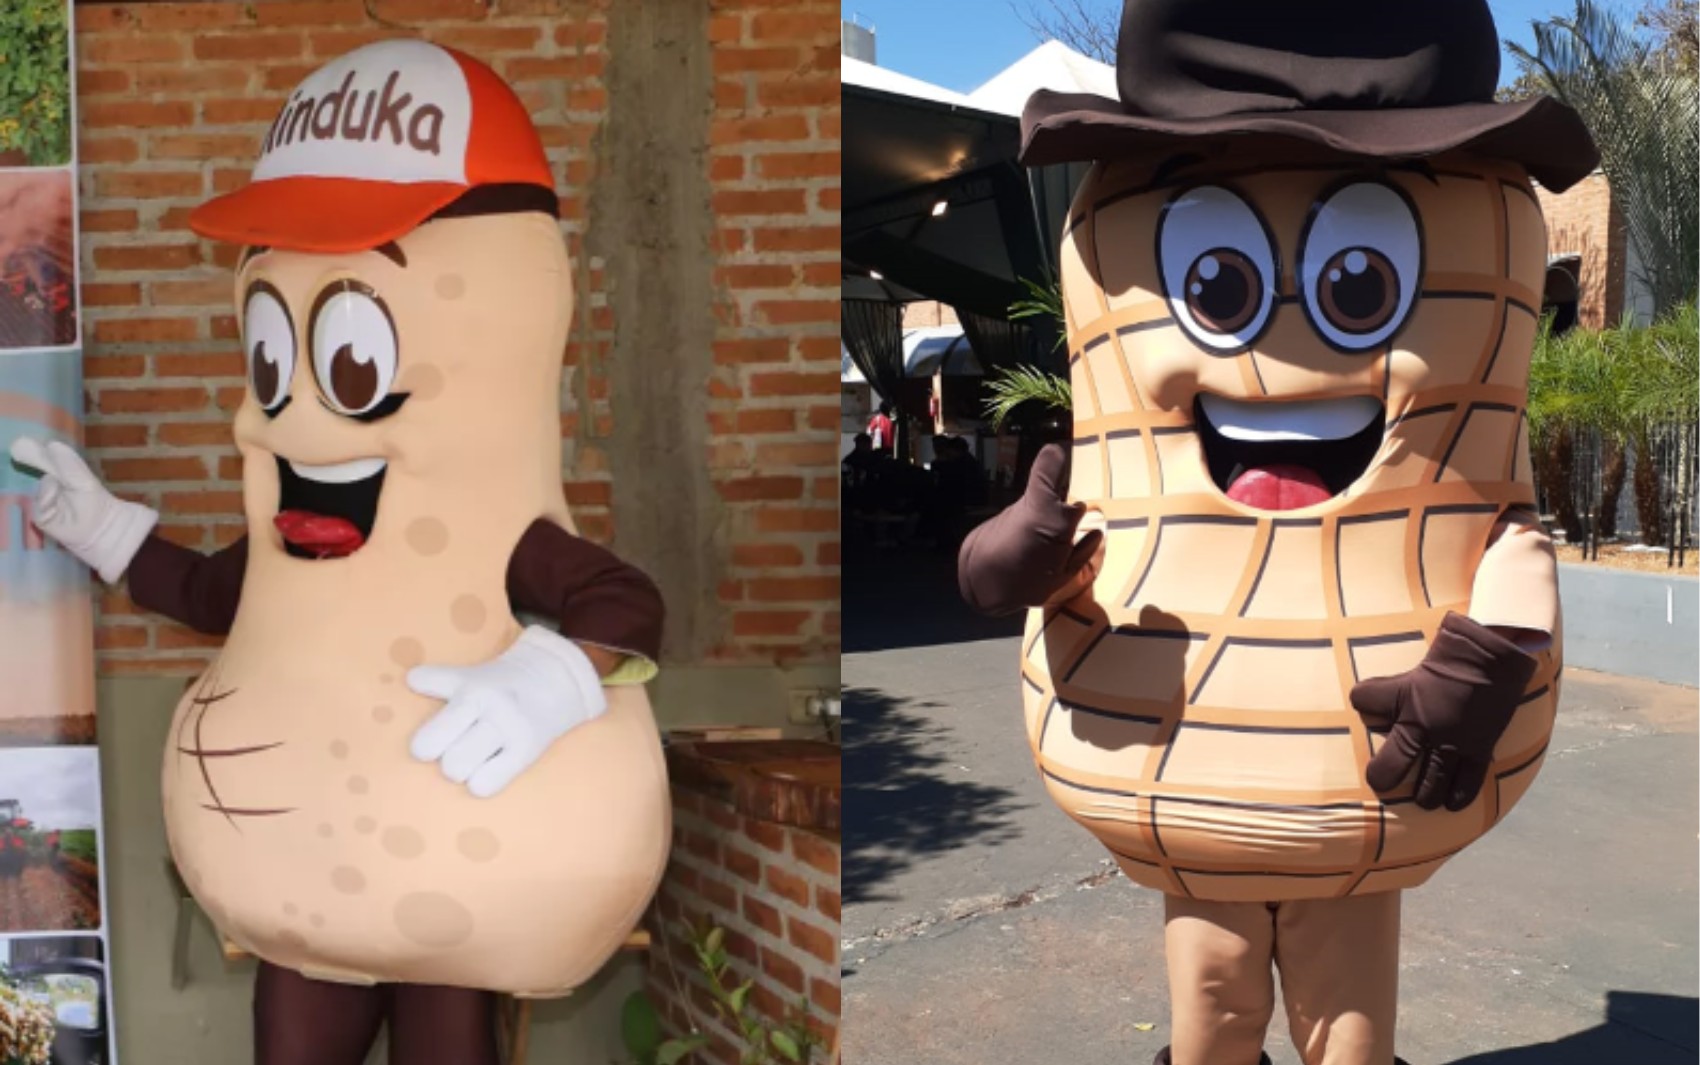 Após viralizar com aspecto fálico, mascote de feira ganha forma de amendoim em Jaboticabal, SP